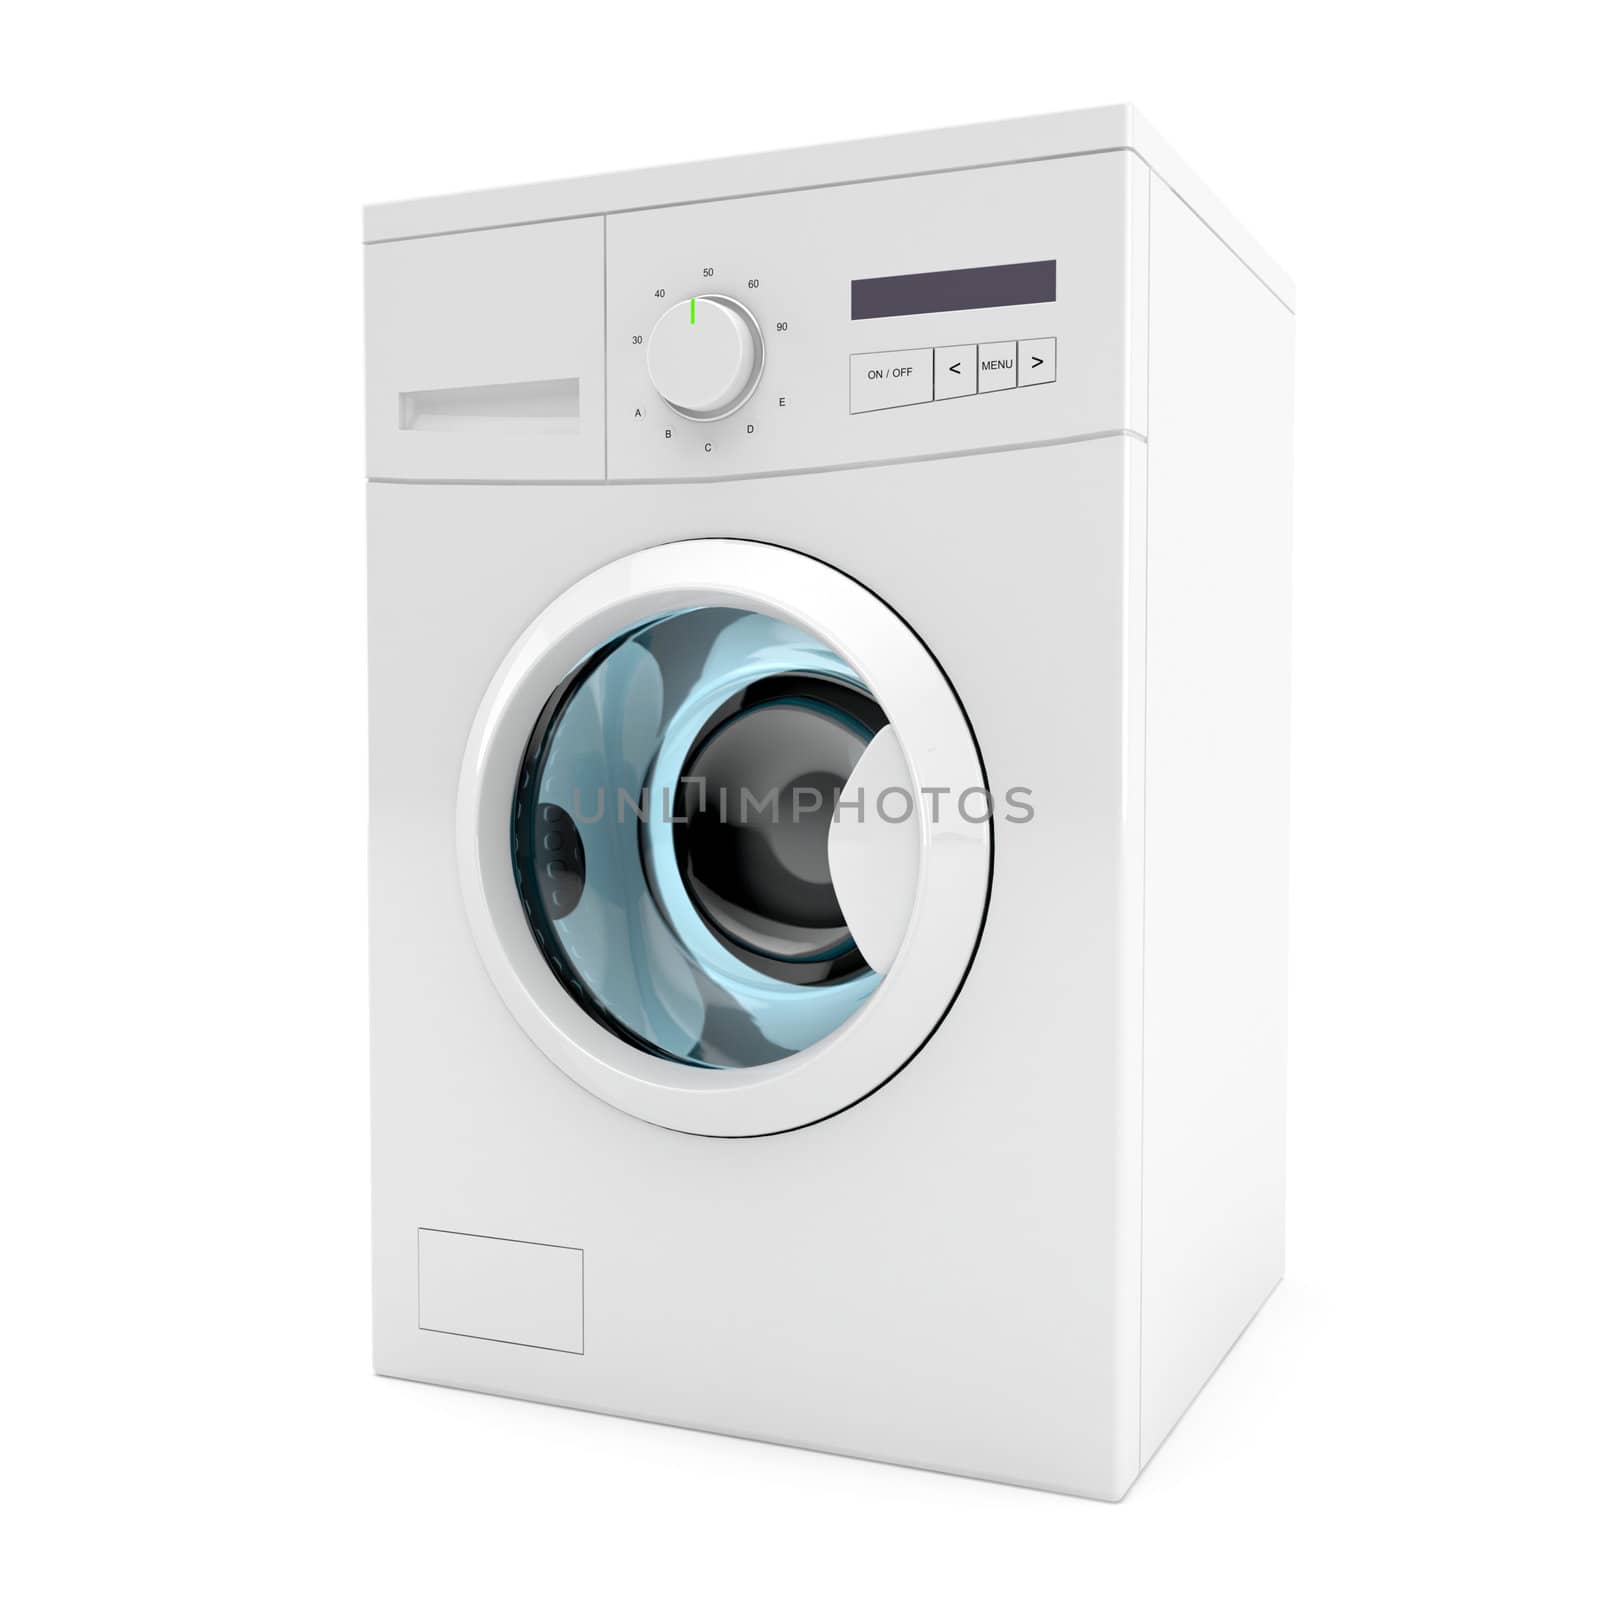 3d image of washing machine on white background